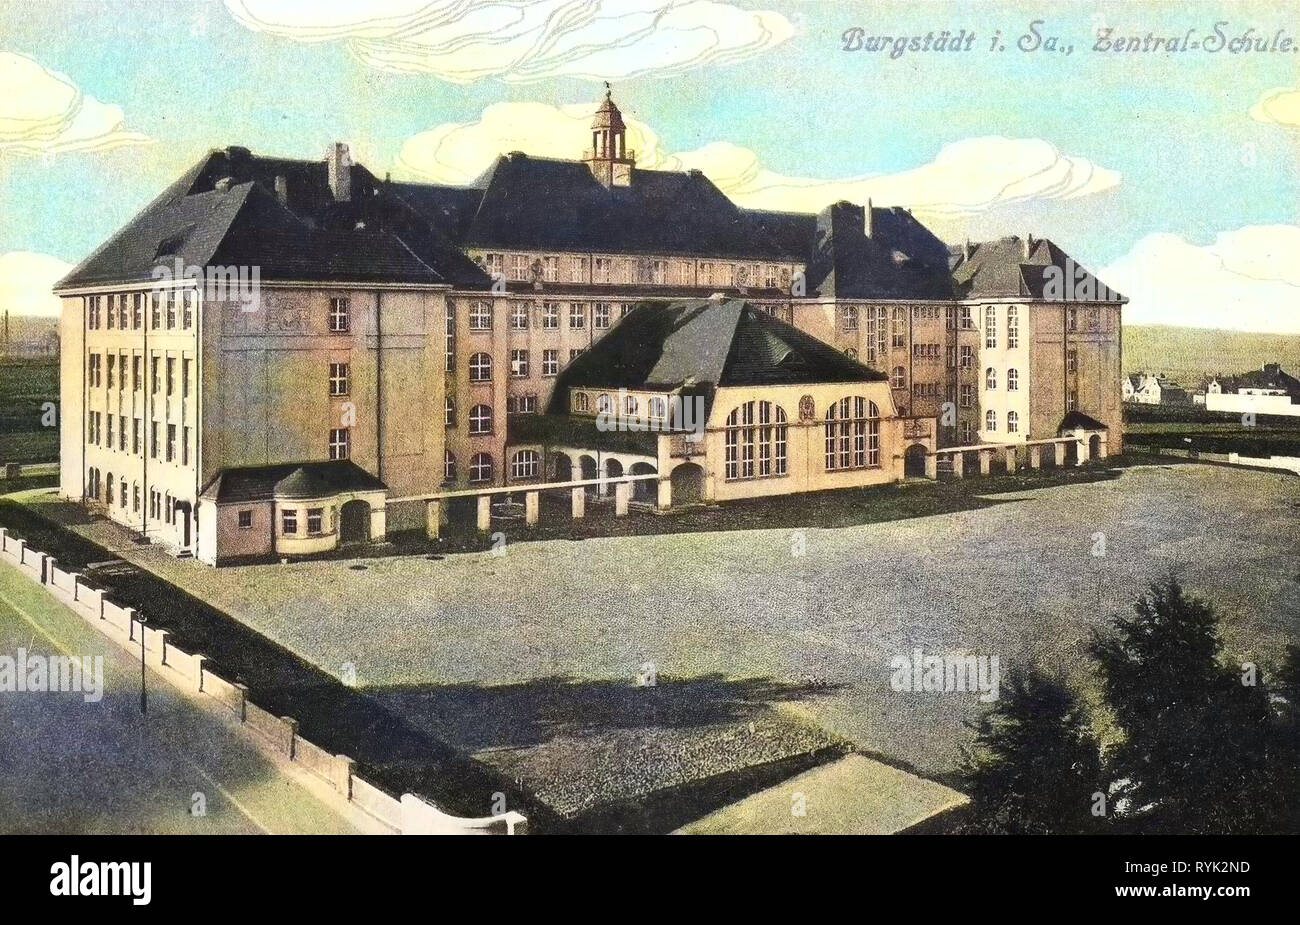 Schulen im Landkreis Mittelsachsen, Gebäude in Burgstädt, 1914, Landkreis Mittelsachsen, Burgstädt, Zentralschule, Deutschland Stockfoto